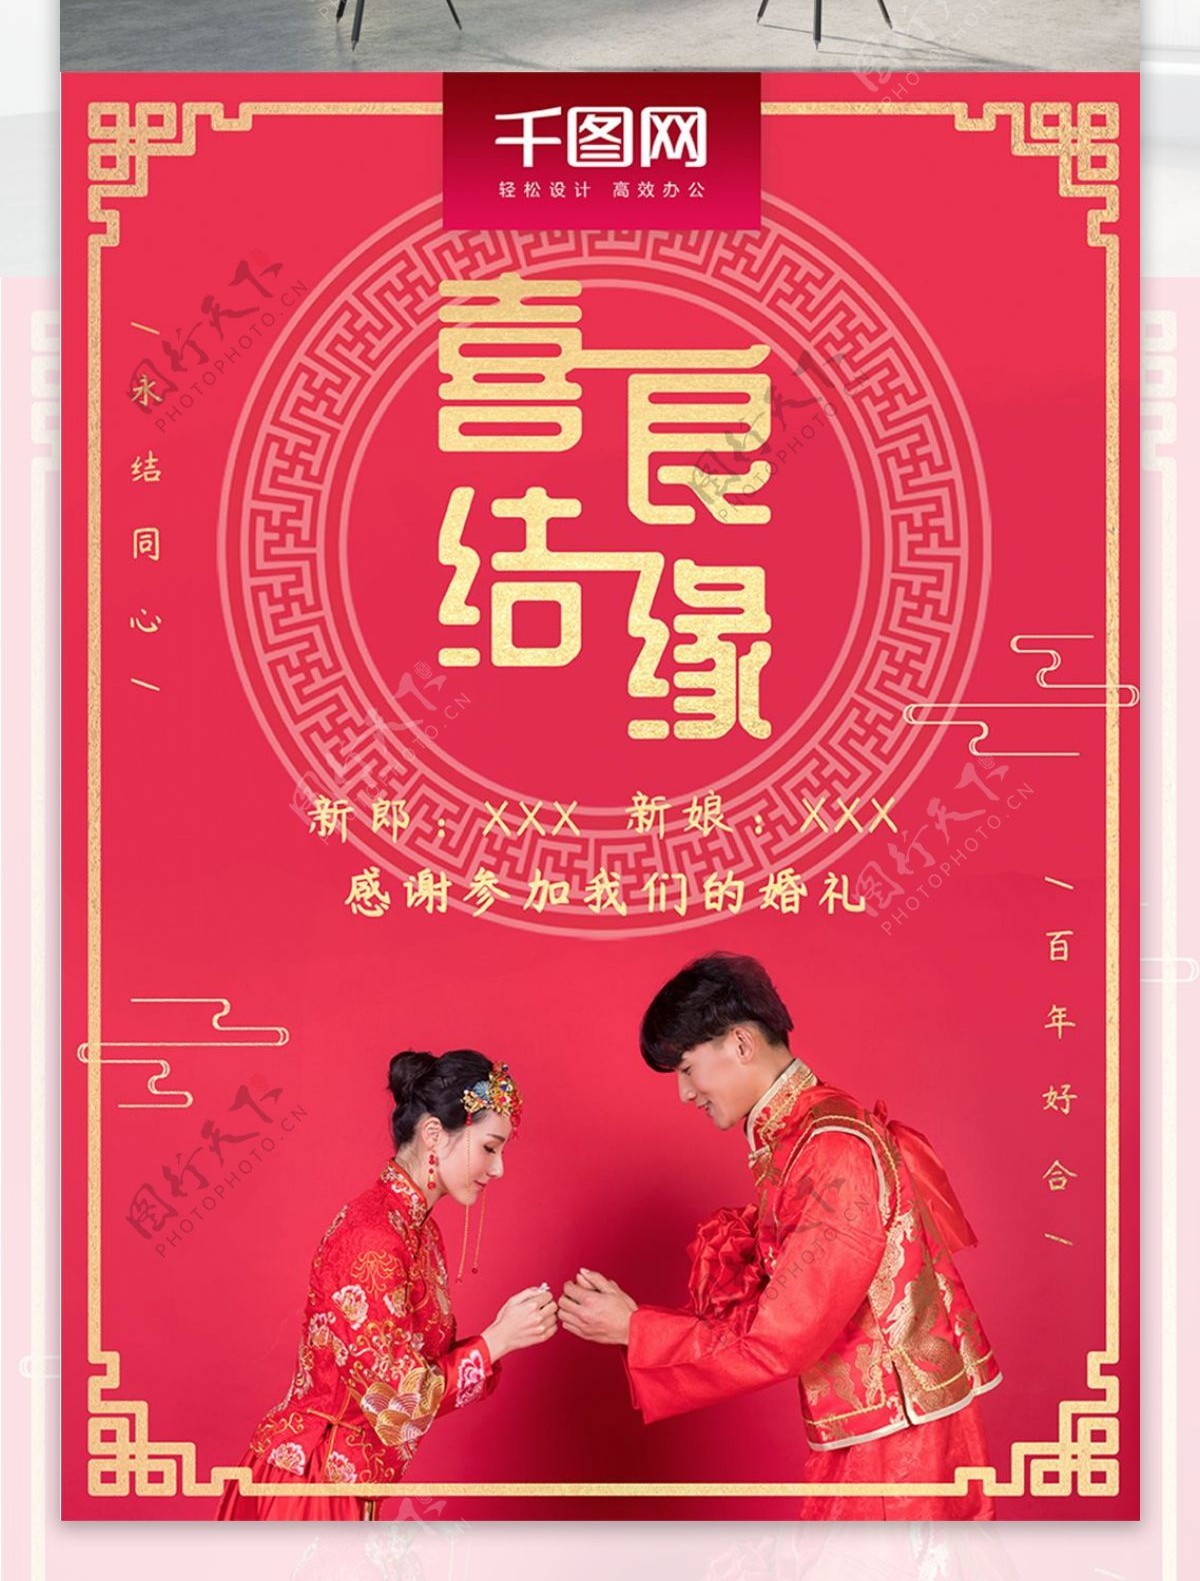 中式婚礼喜结良缘海报